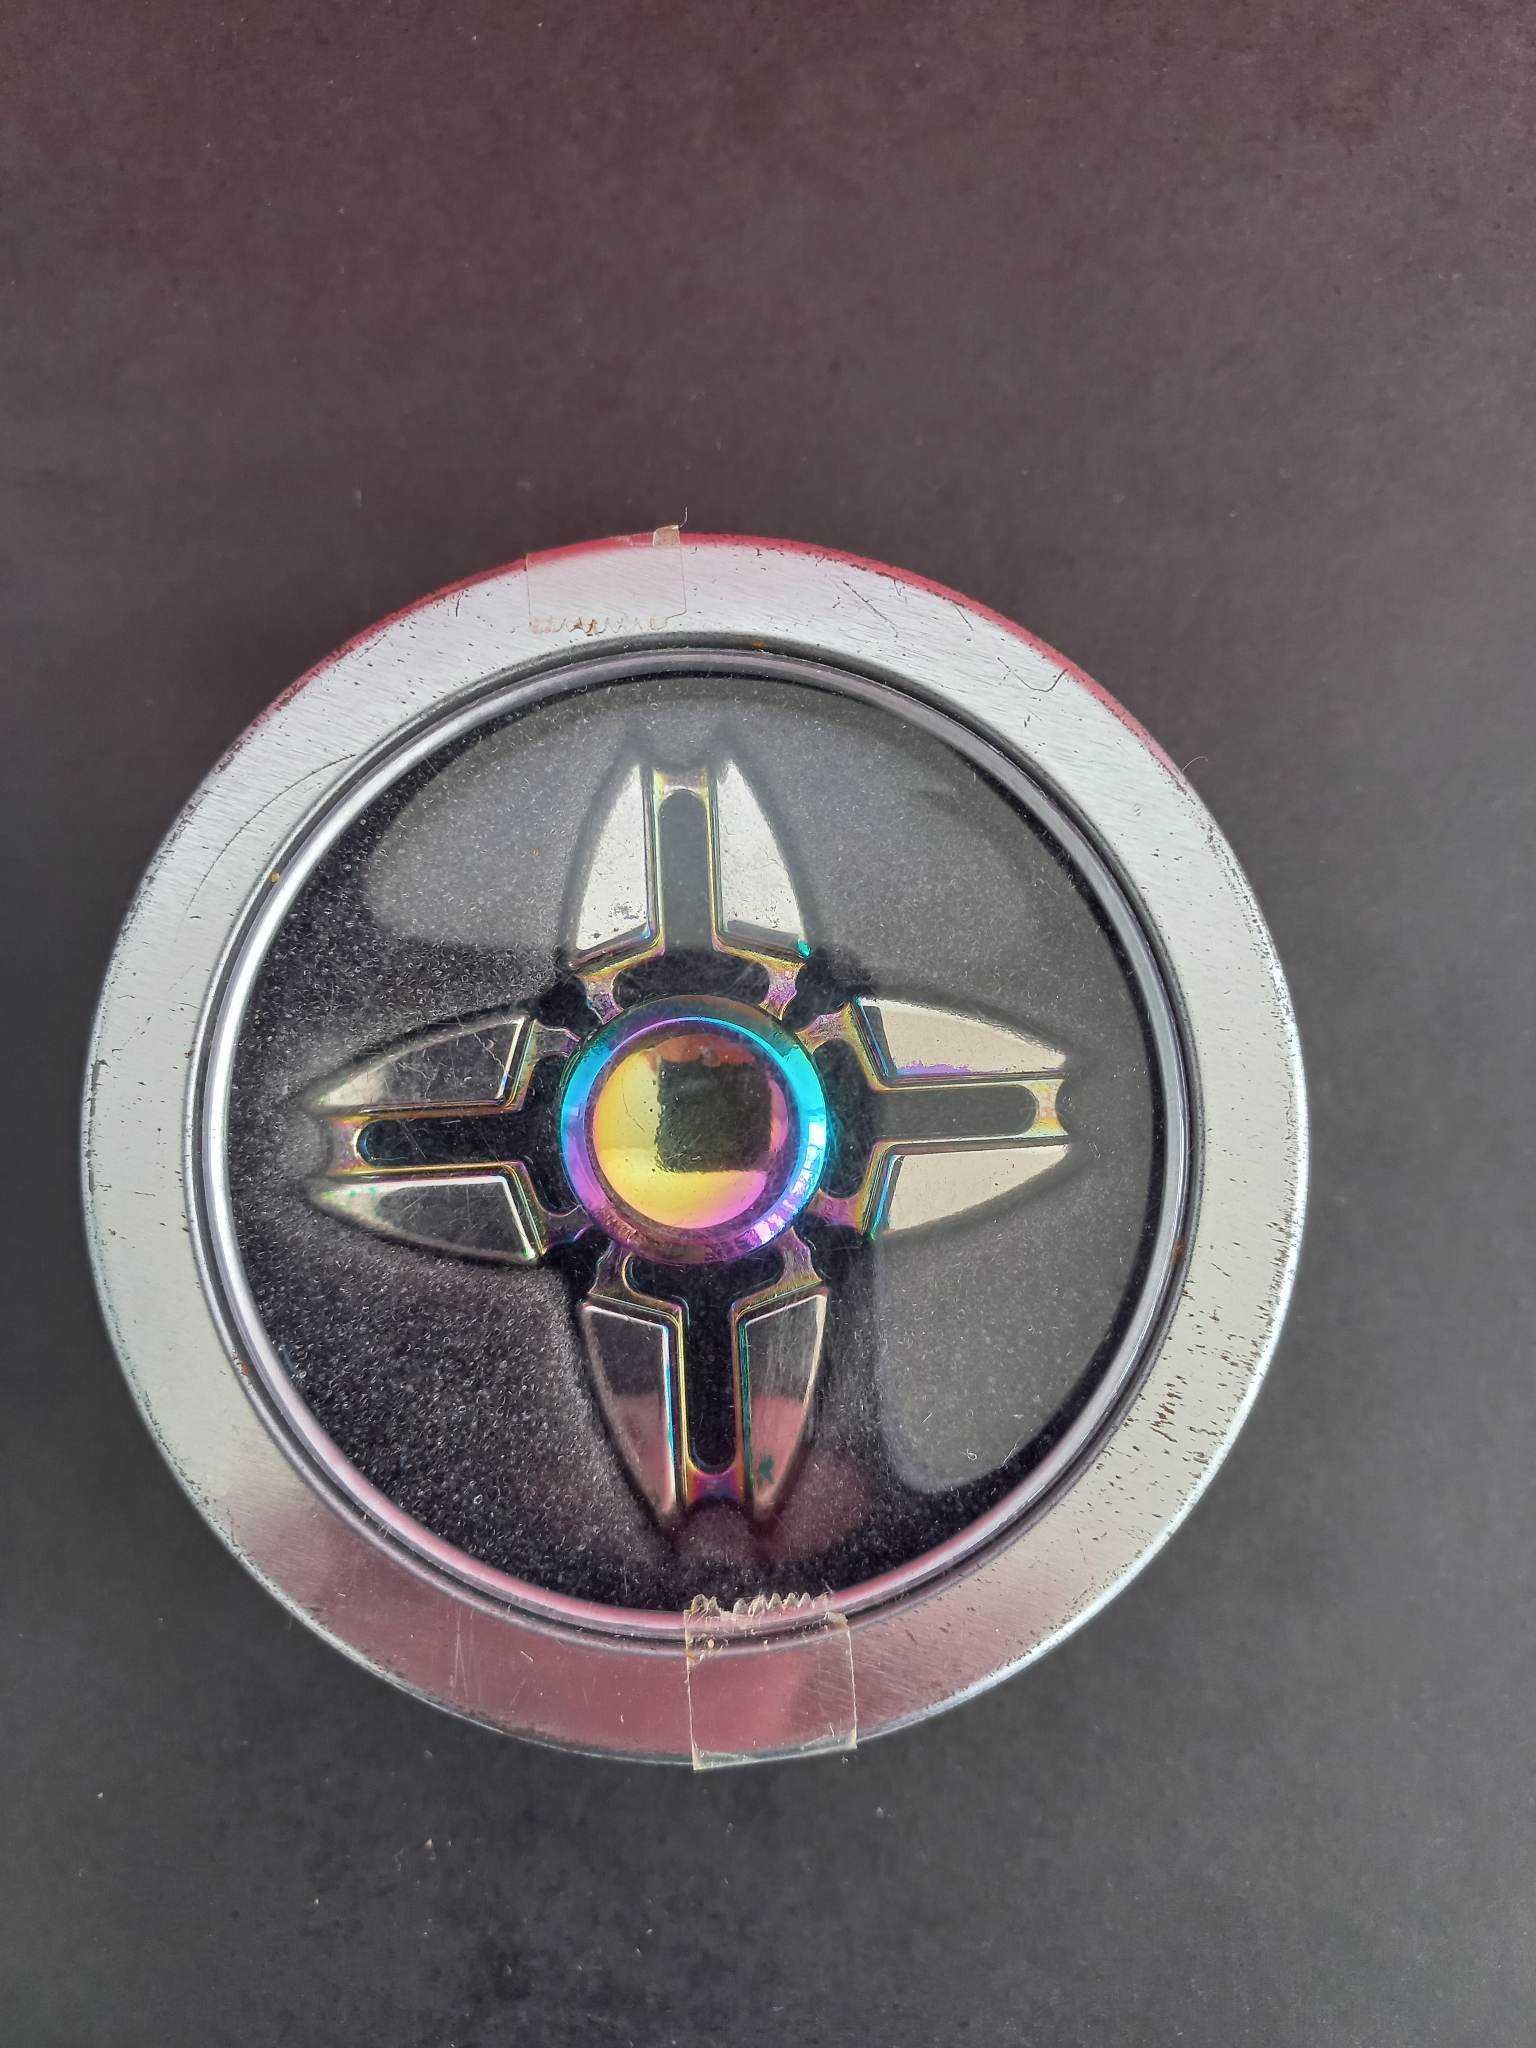 Fidget spinner din metal faded cu cutie metalica